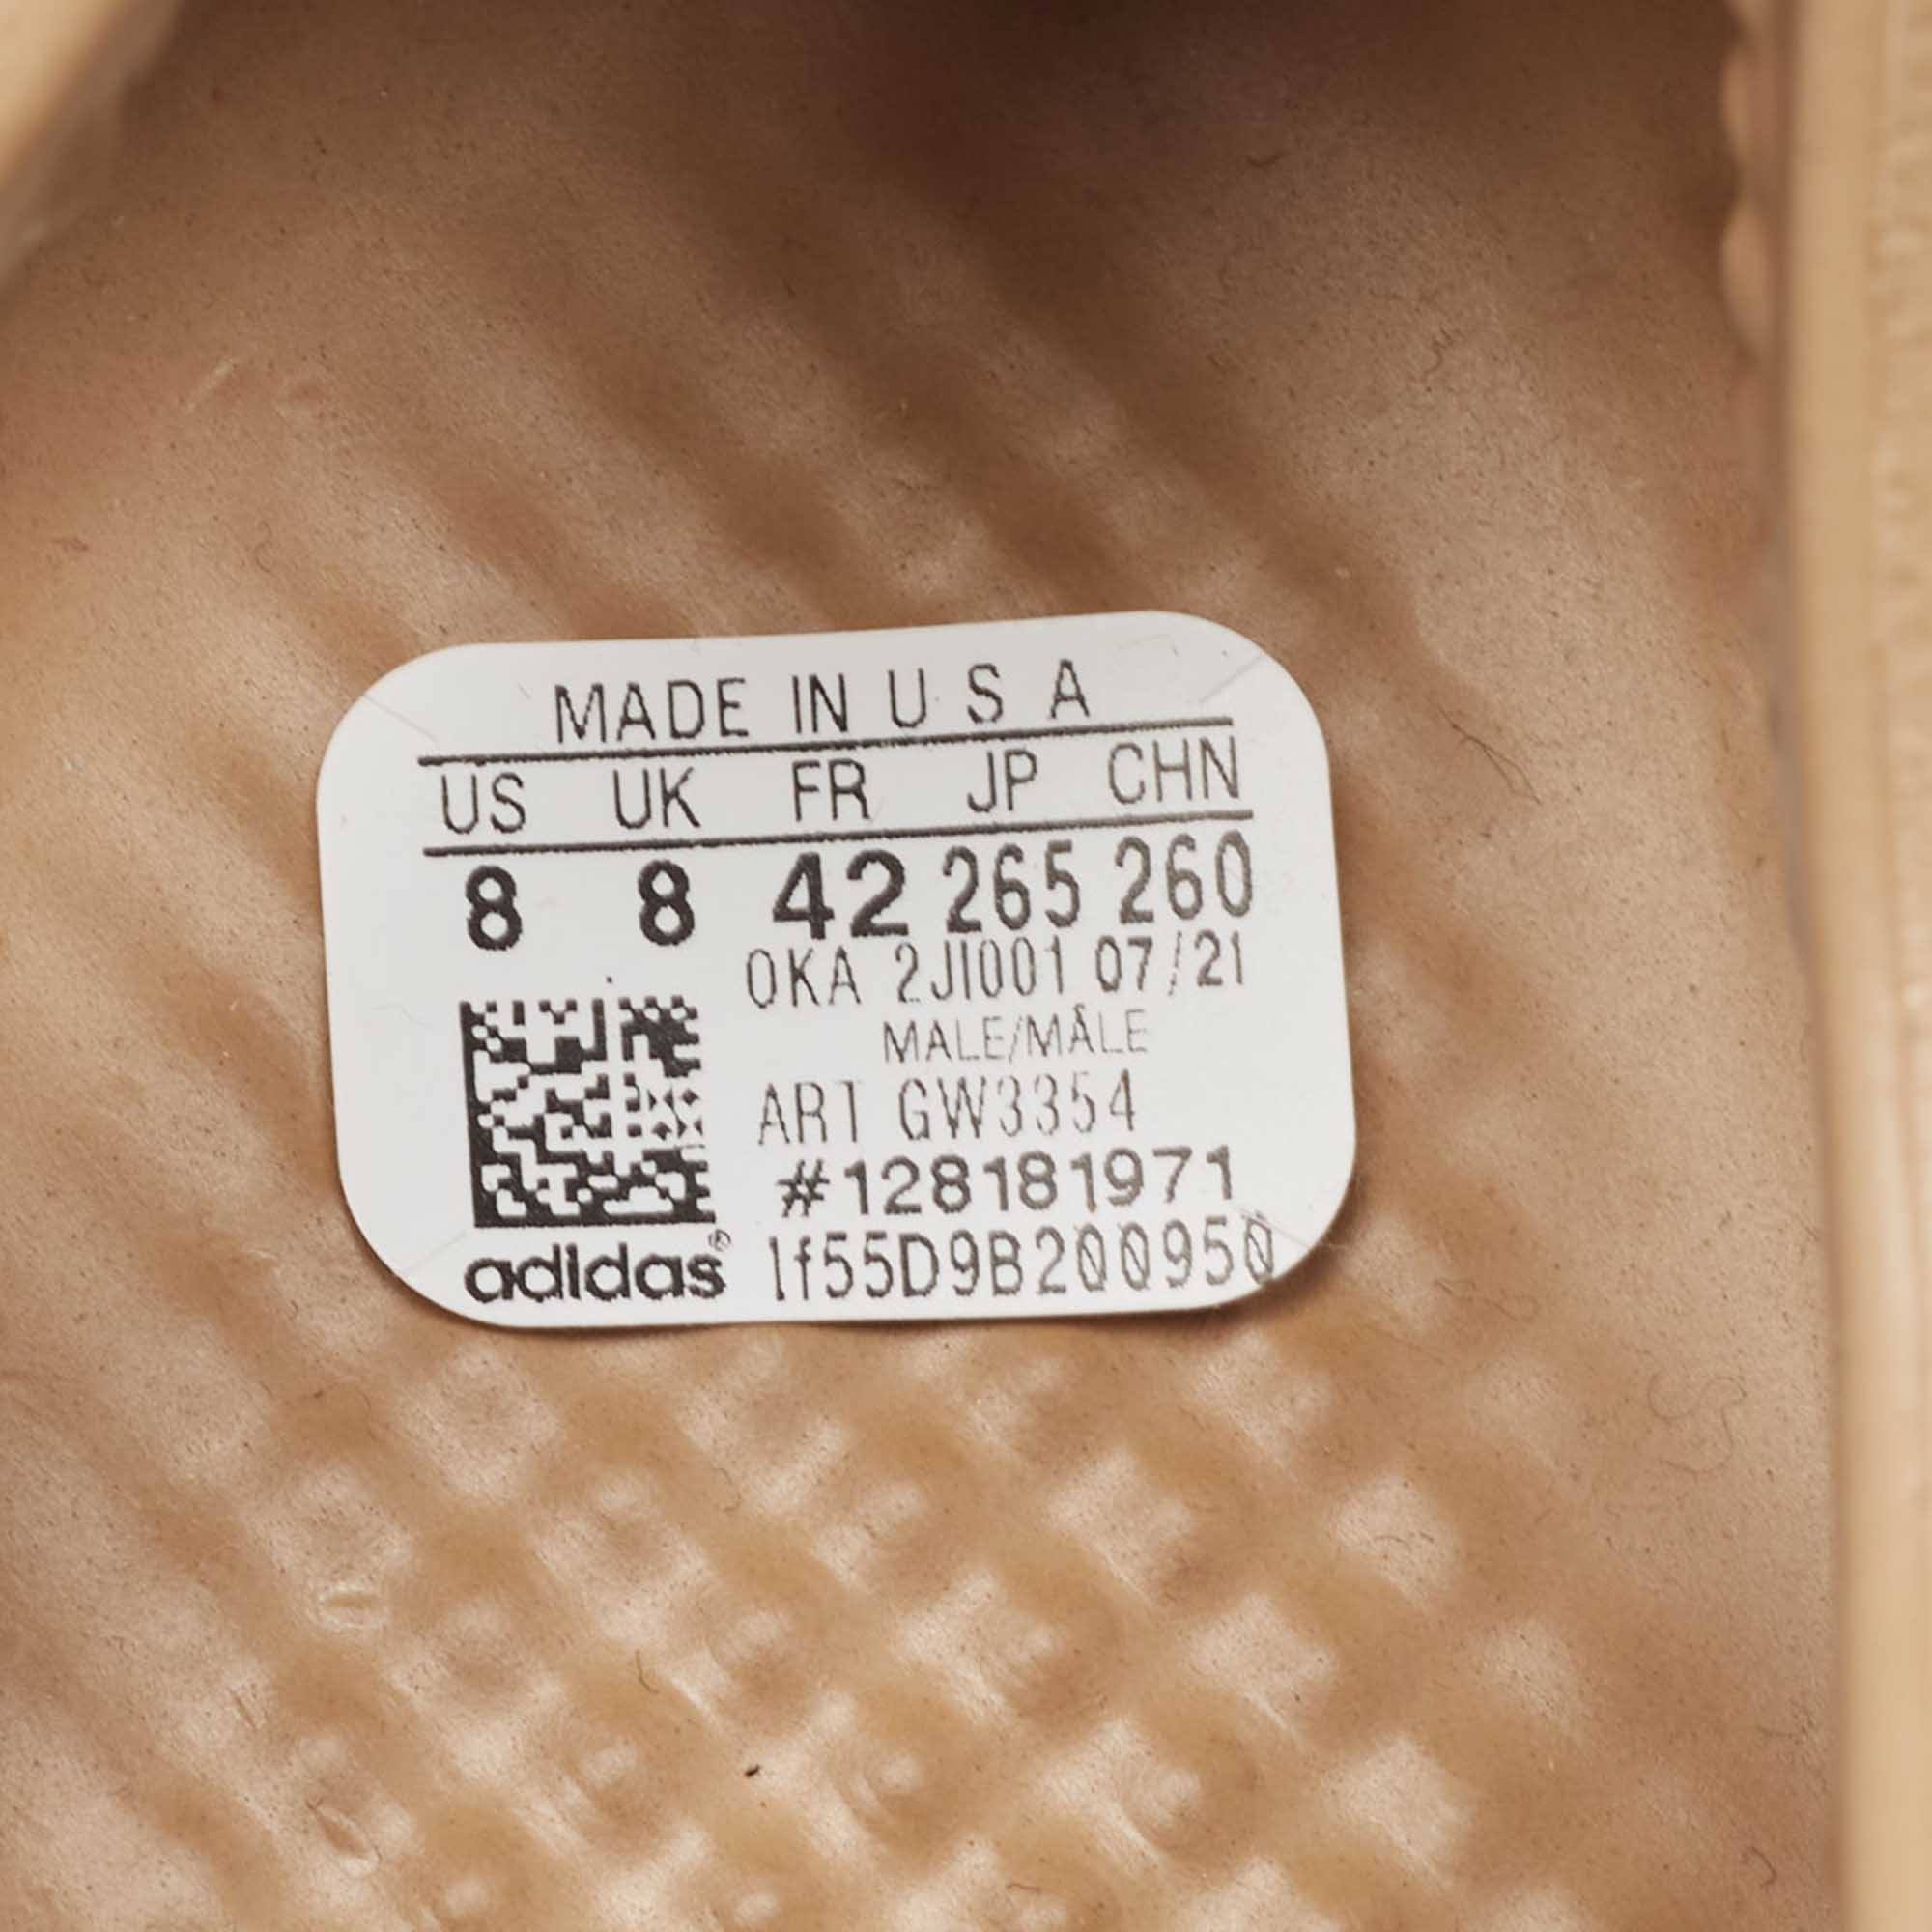 Yeezy X Adidas Brown Rubber Foam Runner Ochre Sneakers Size 42